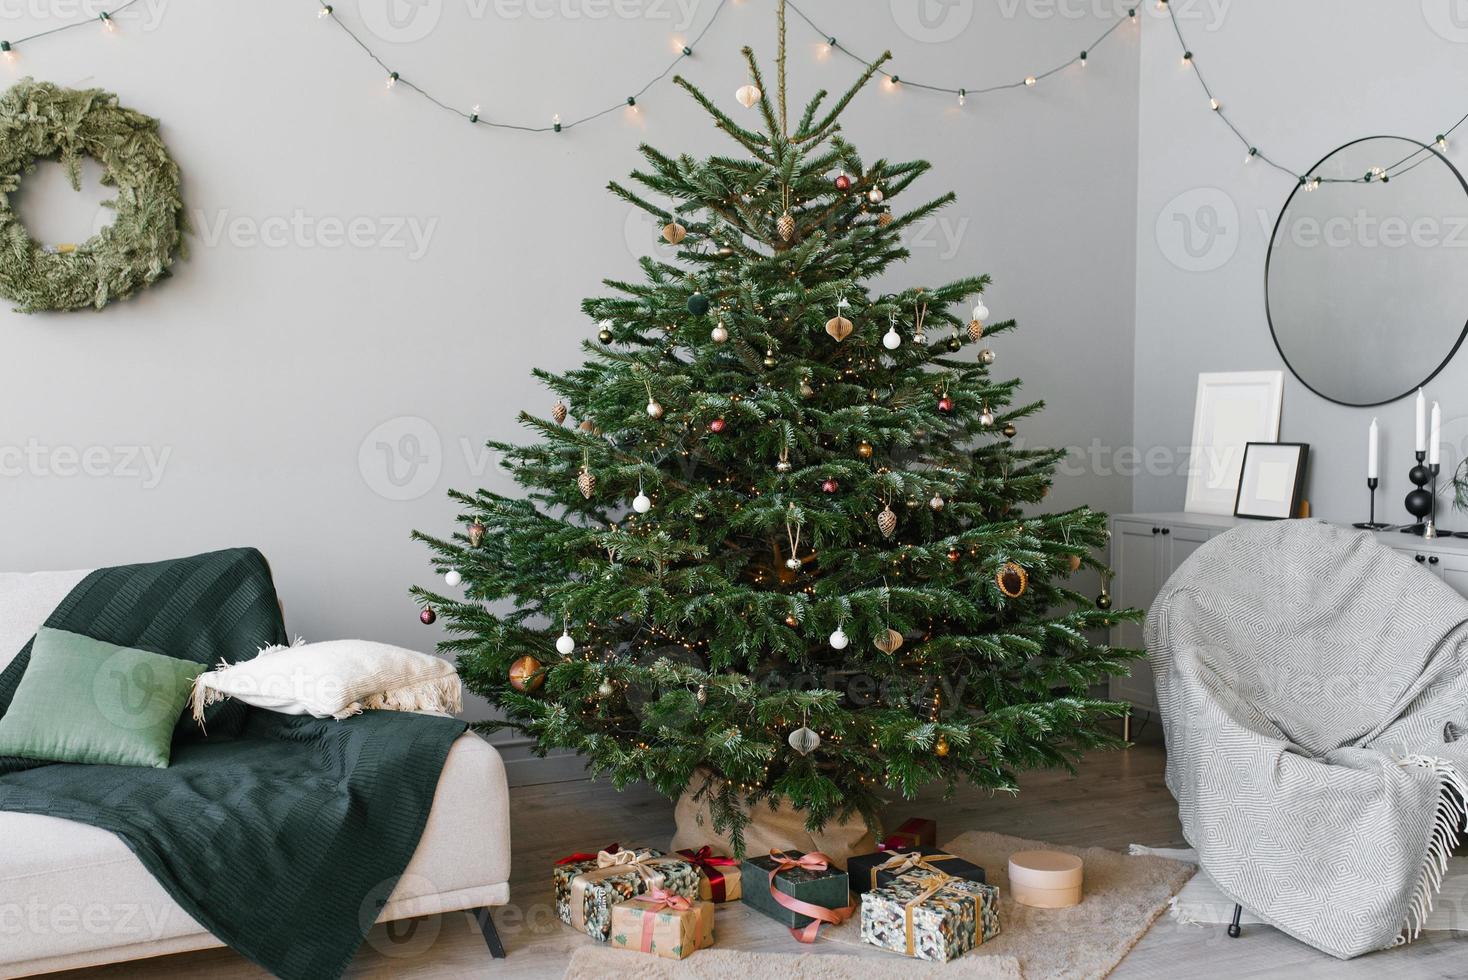 une magnifique Noël arbre sapin avec jouets et une canapé avec oreillers dans le intérieur de le vivant pièce dans le scandinave style avec gris des murs photo